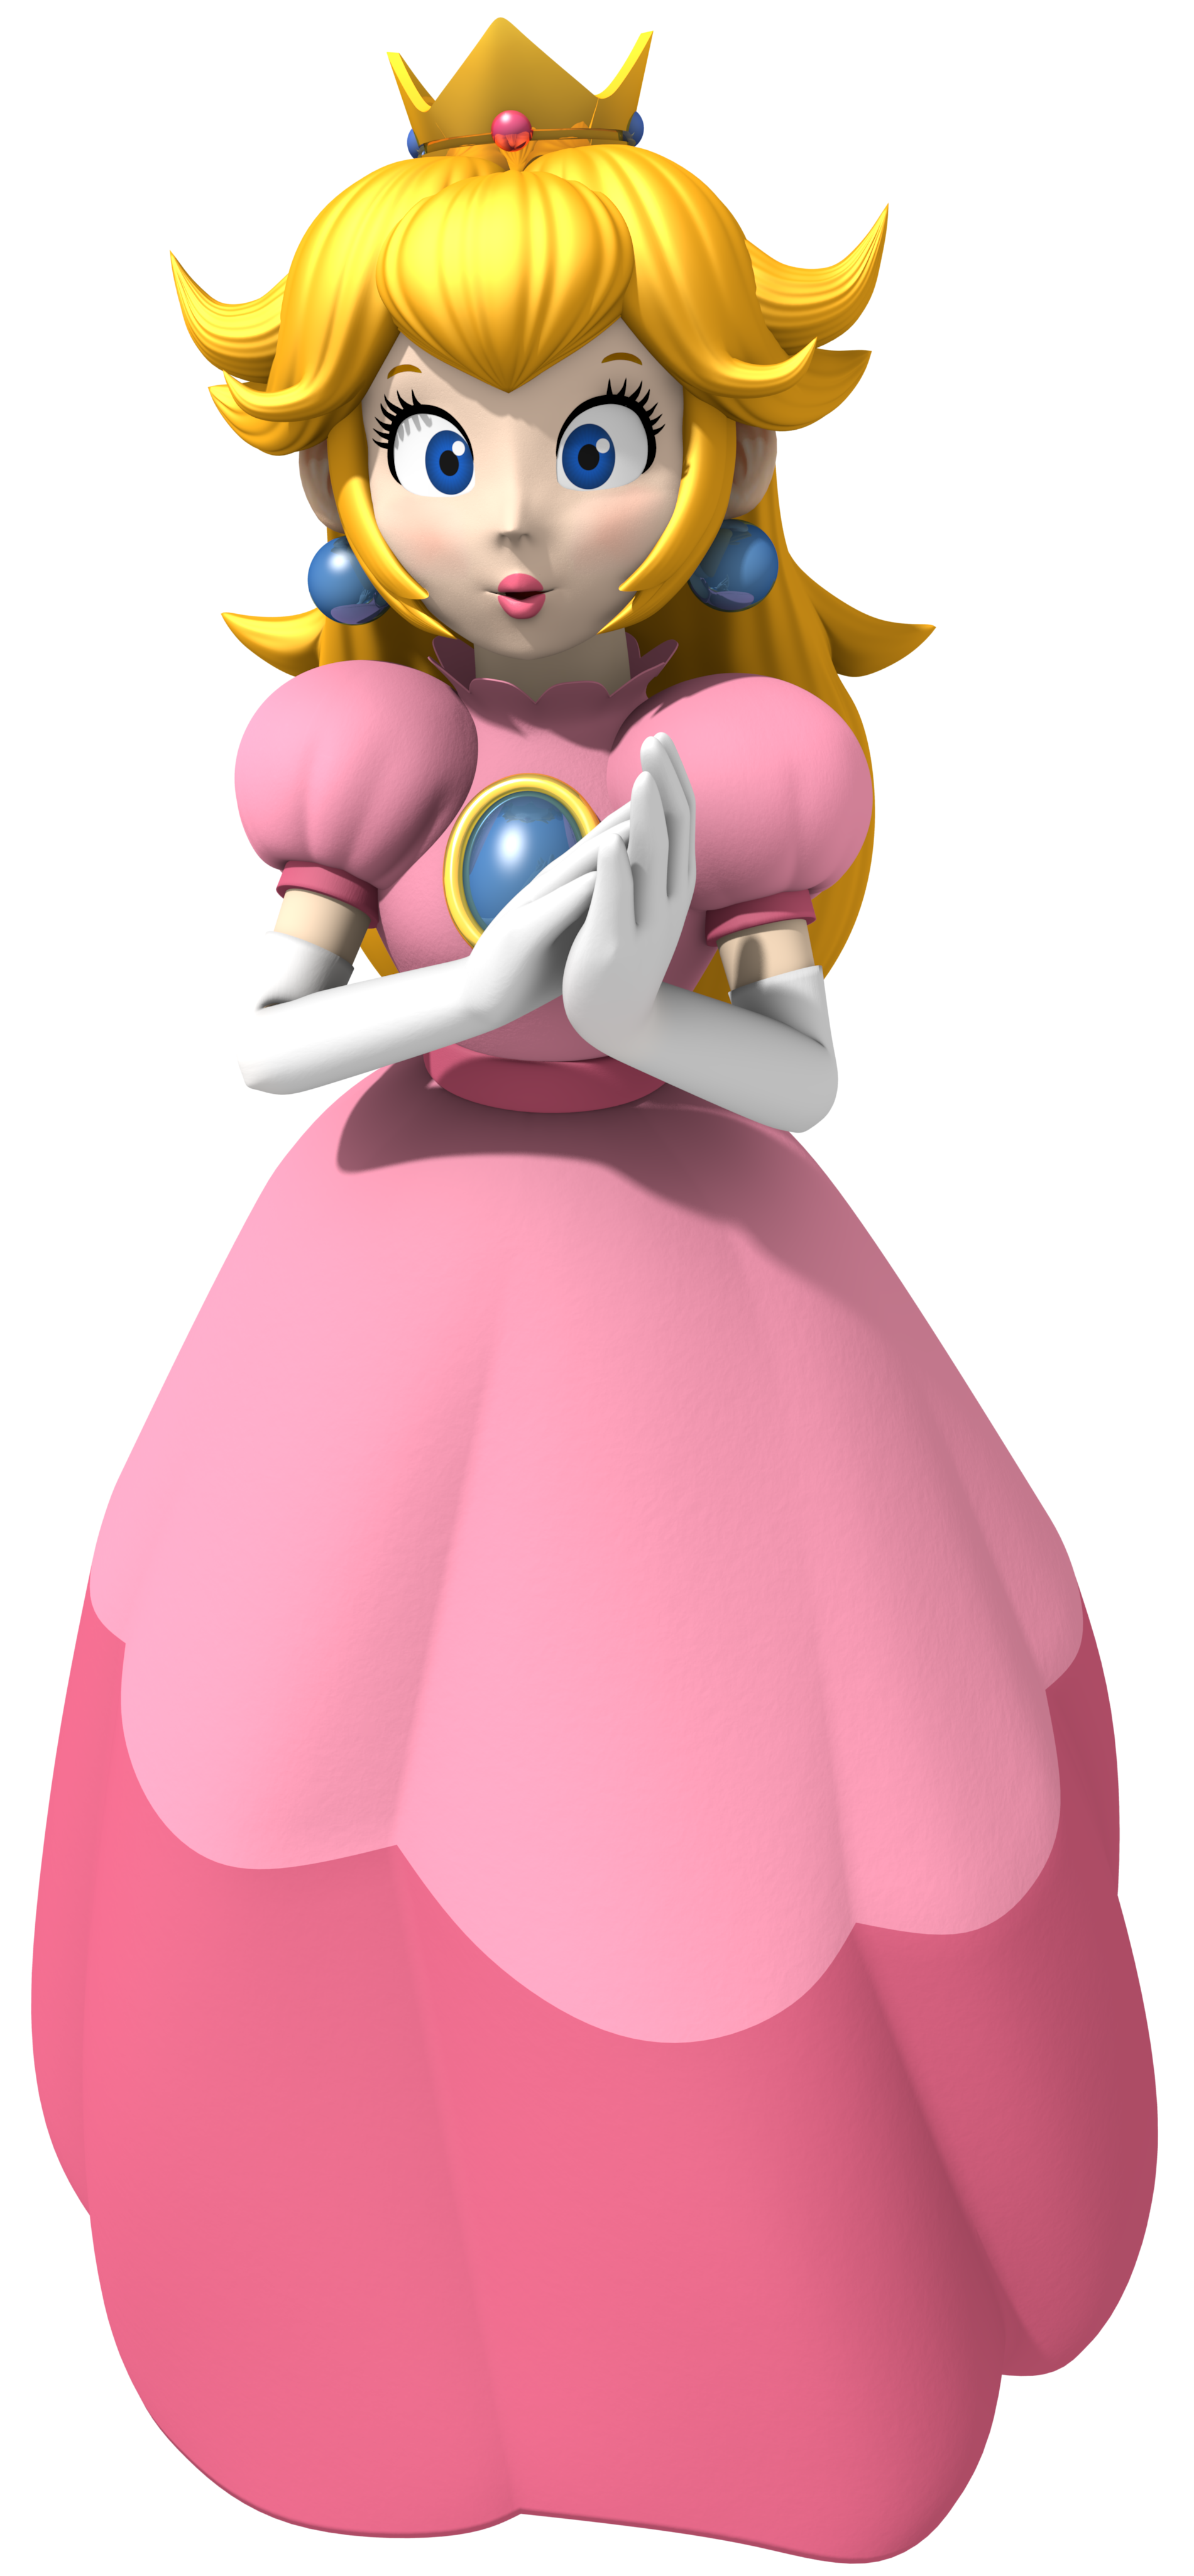 Princess Peach N64